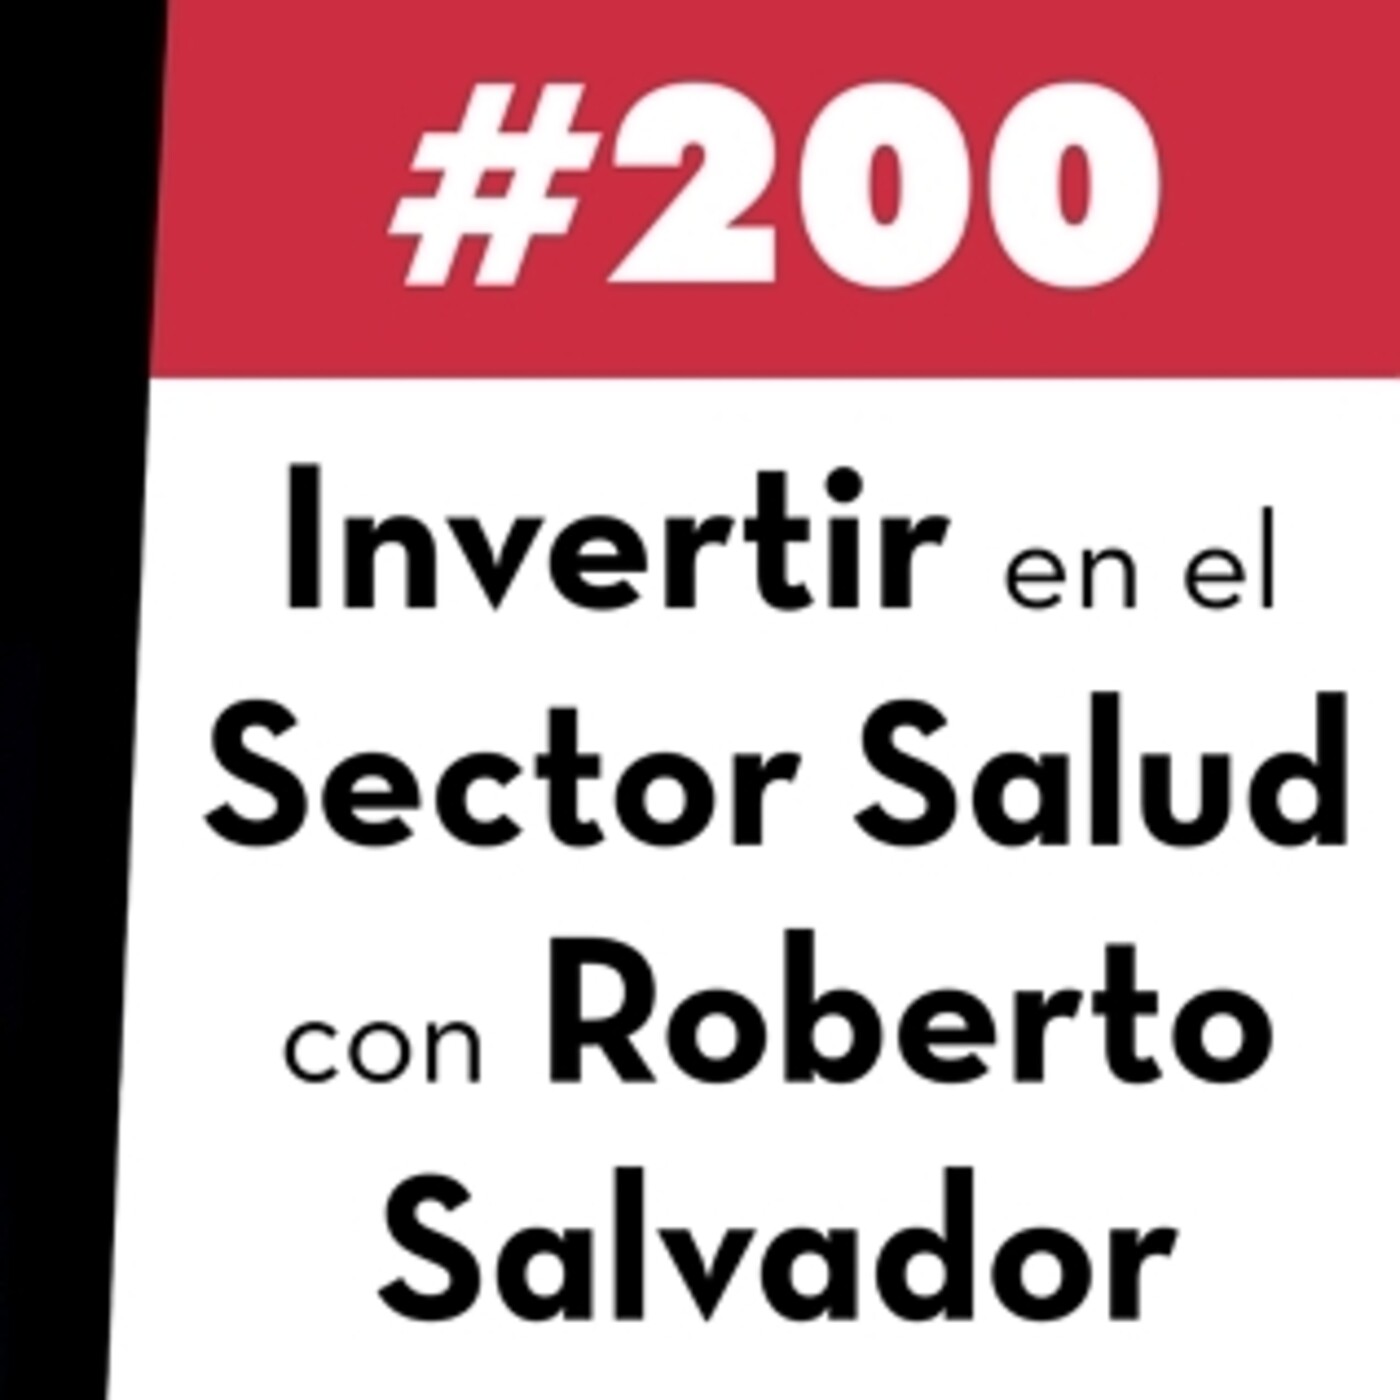 200. Invertir en el Sector Salud con Roberto Salvador